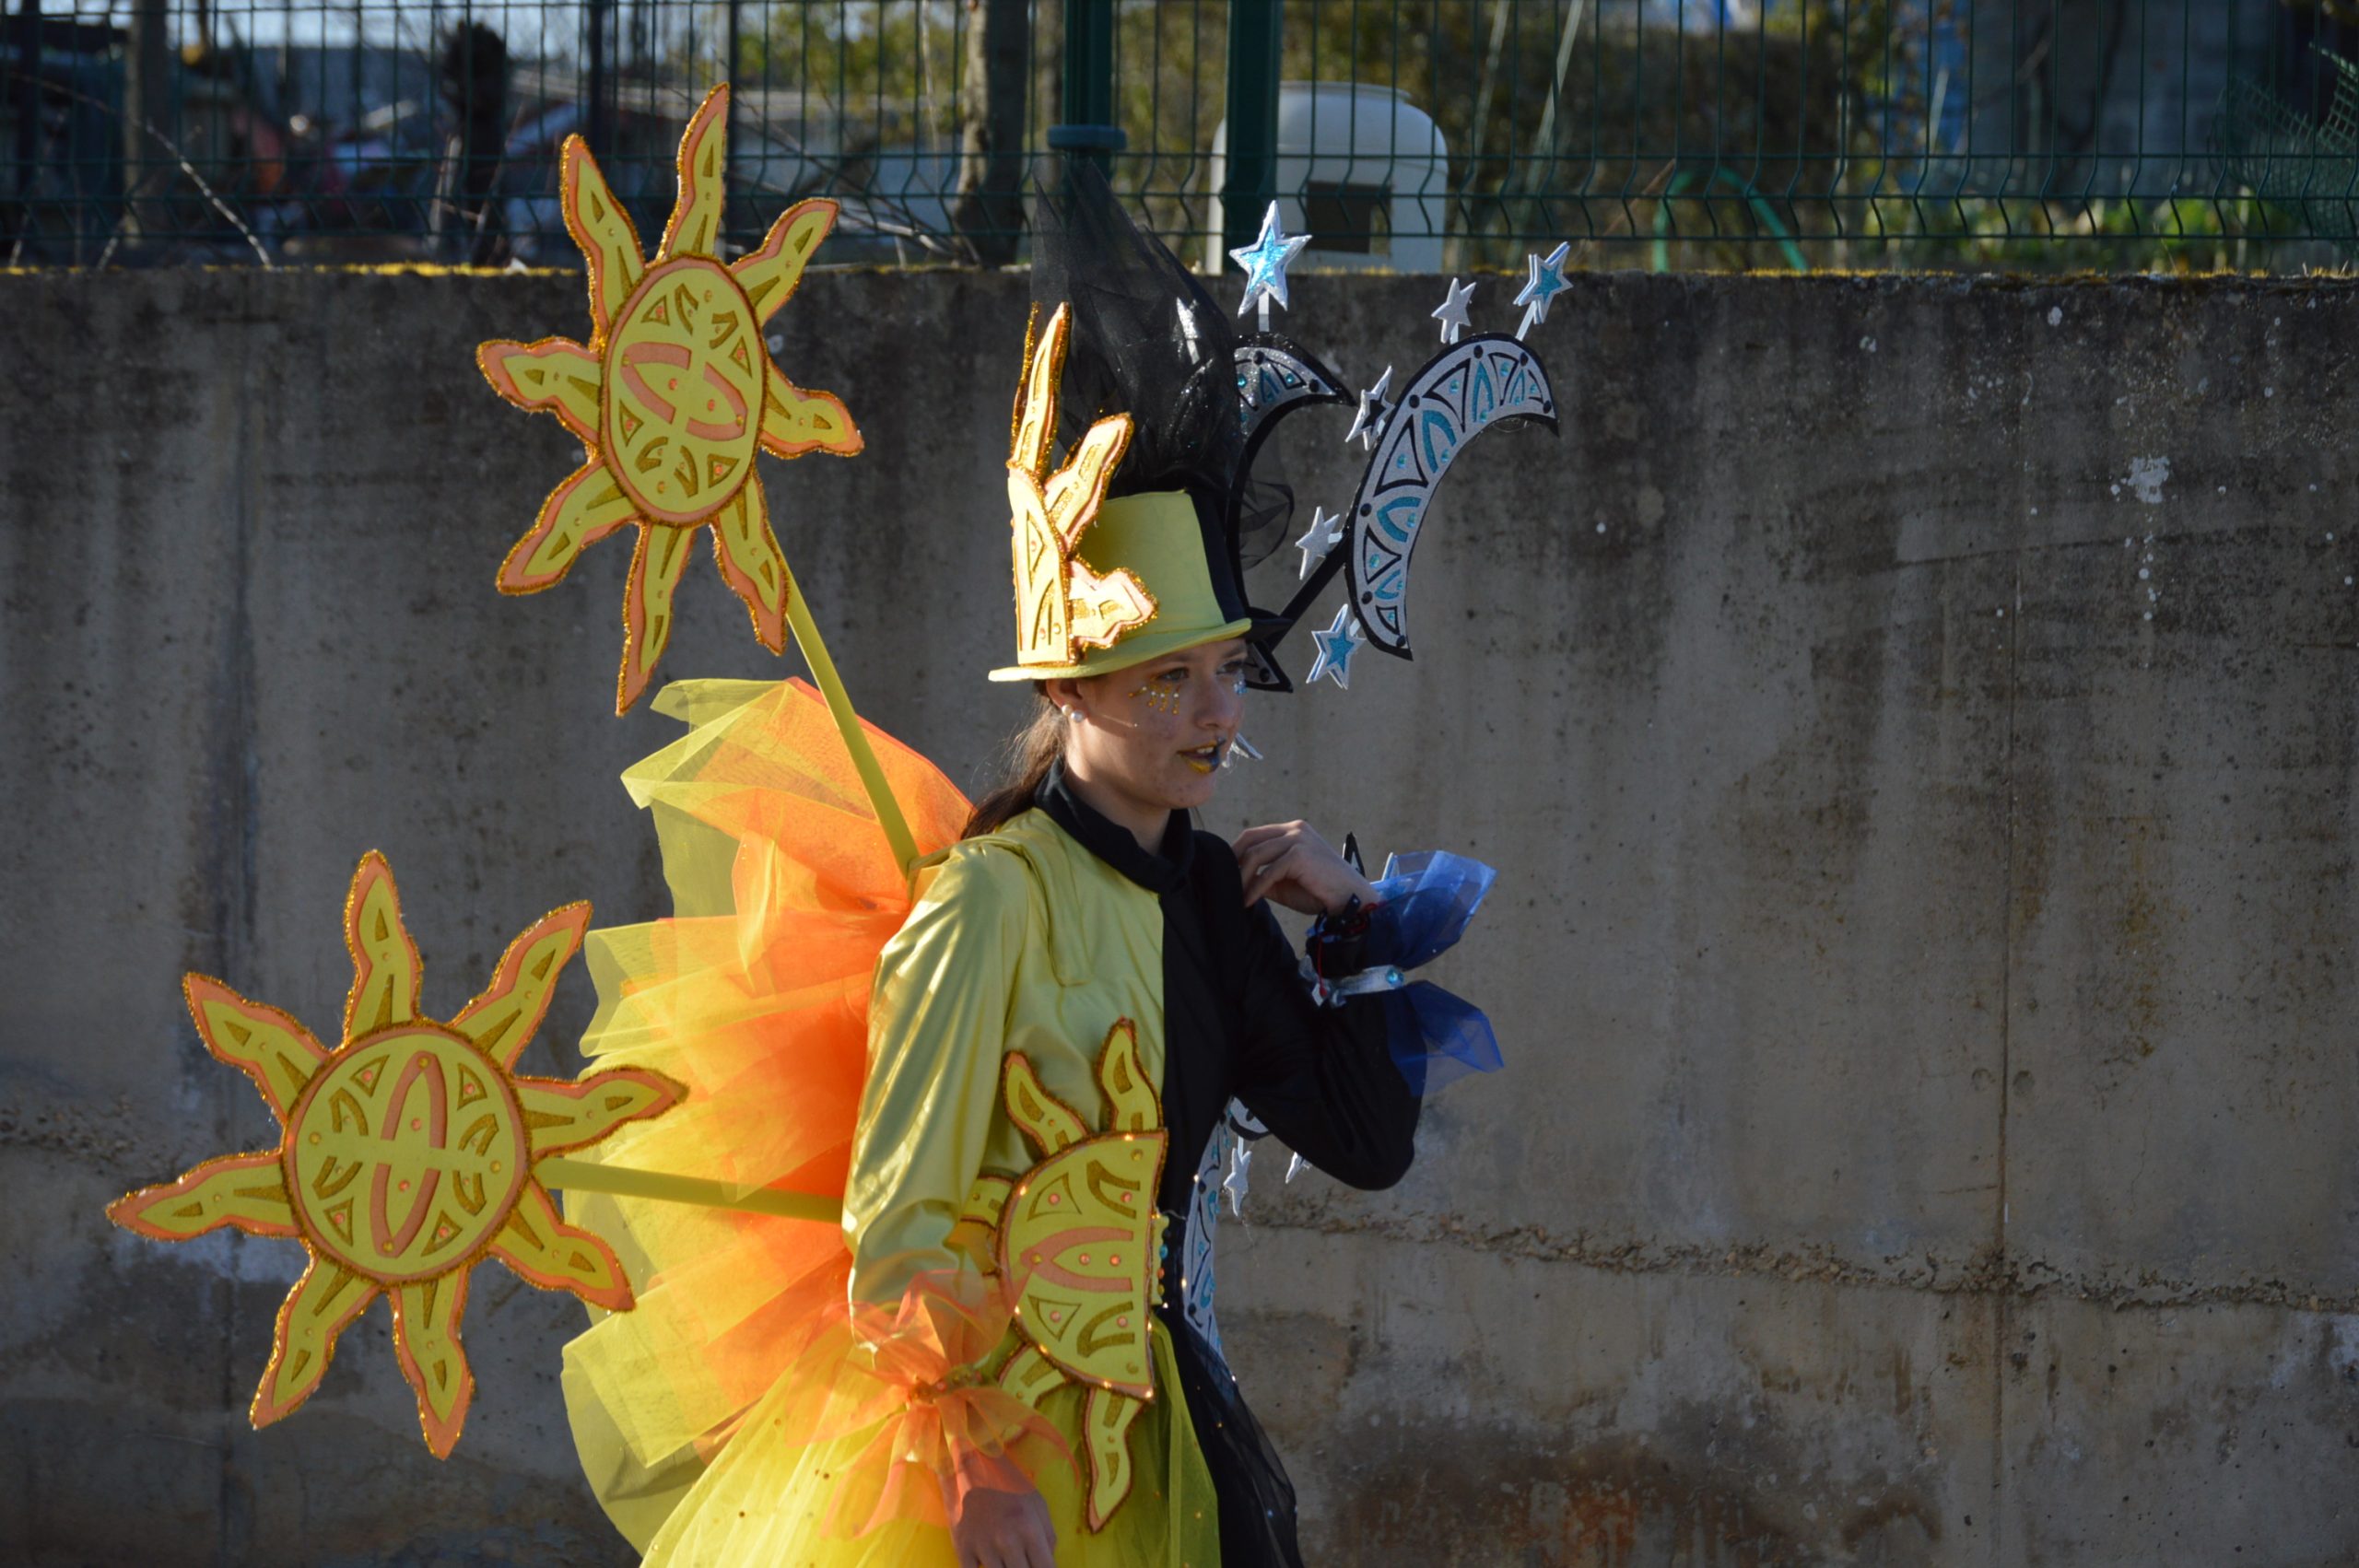 La alegría del Carnaval recorre Cubillos del Sil bajo un sol casi-primaveral 63